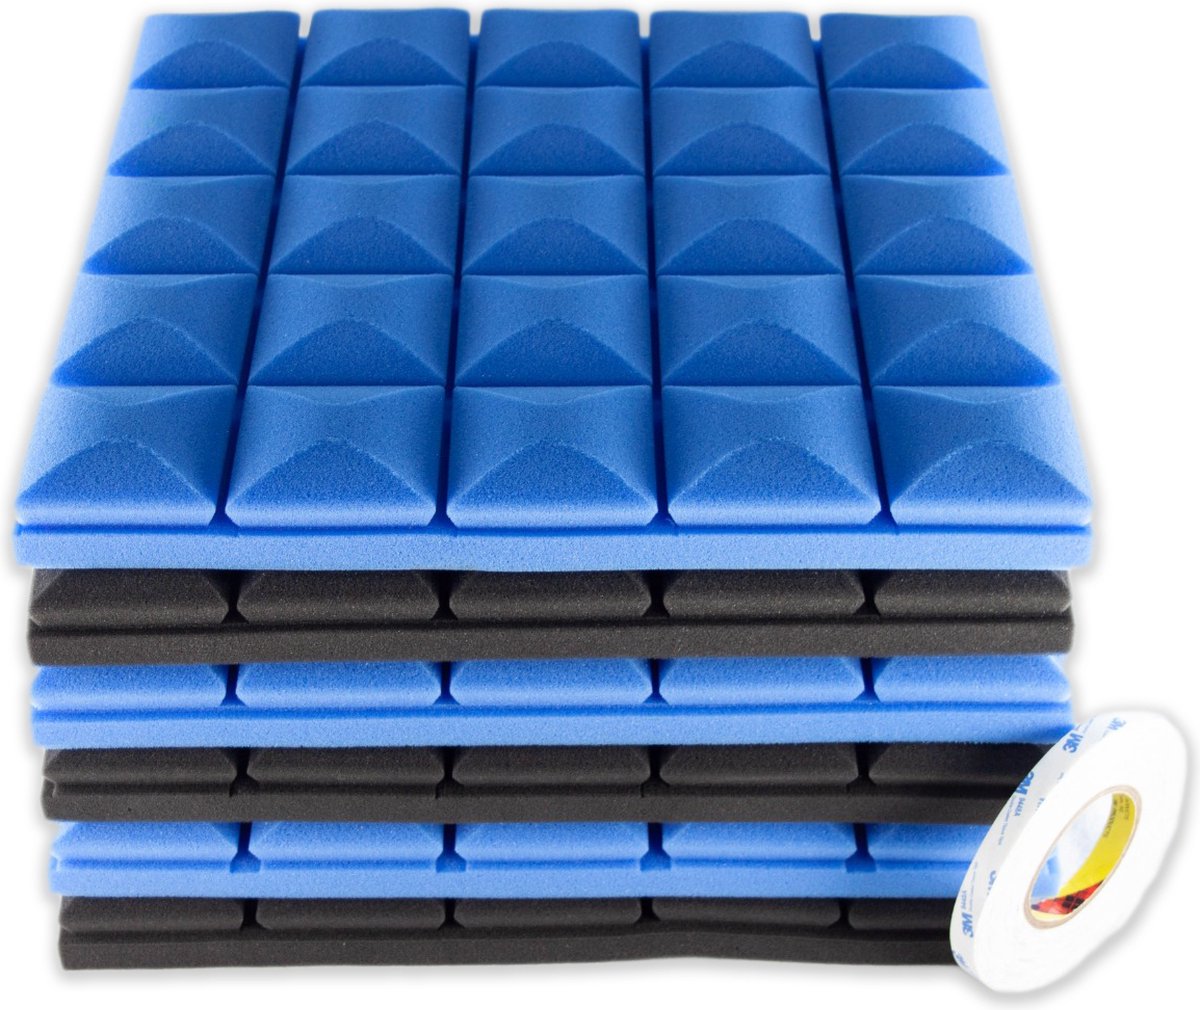 Brute Strength - Isolatieplaten - Inclusief zelfklevende tape - 50x50x5 cm - Mushroom - 6 stuks Zwart Blauw - Geluidsisolatie - Geluidsdemper - Akoestisch wandpaneel